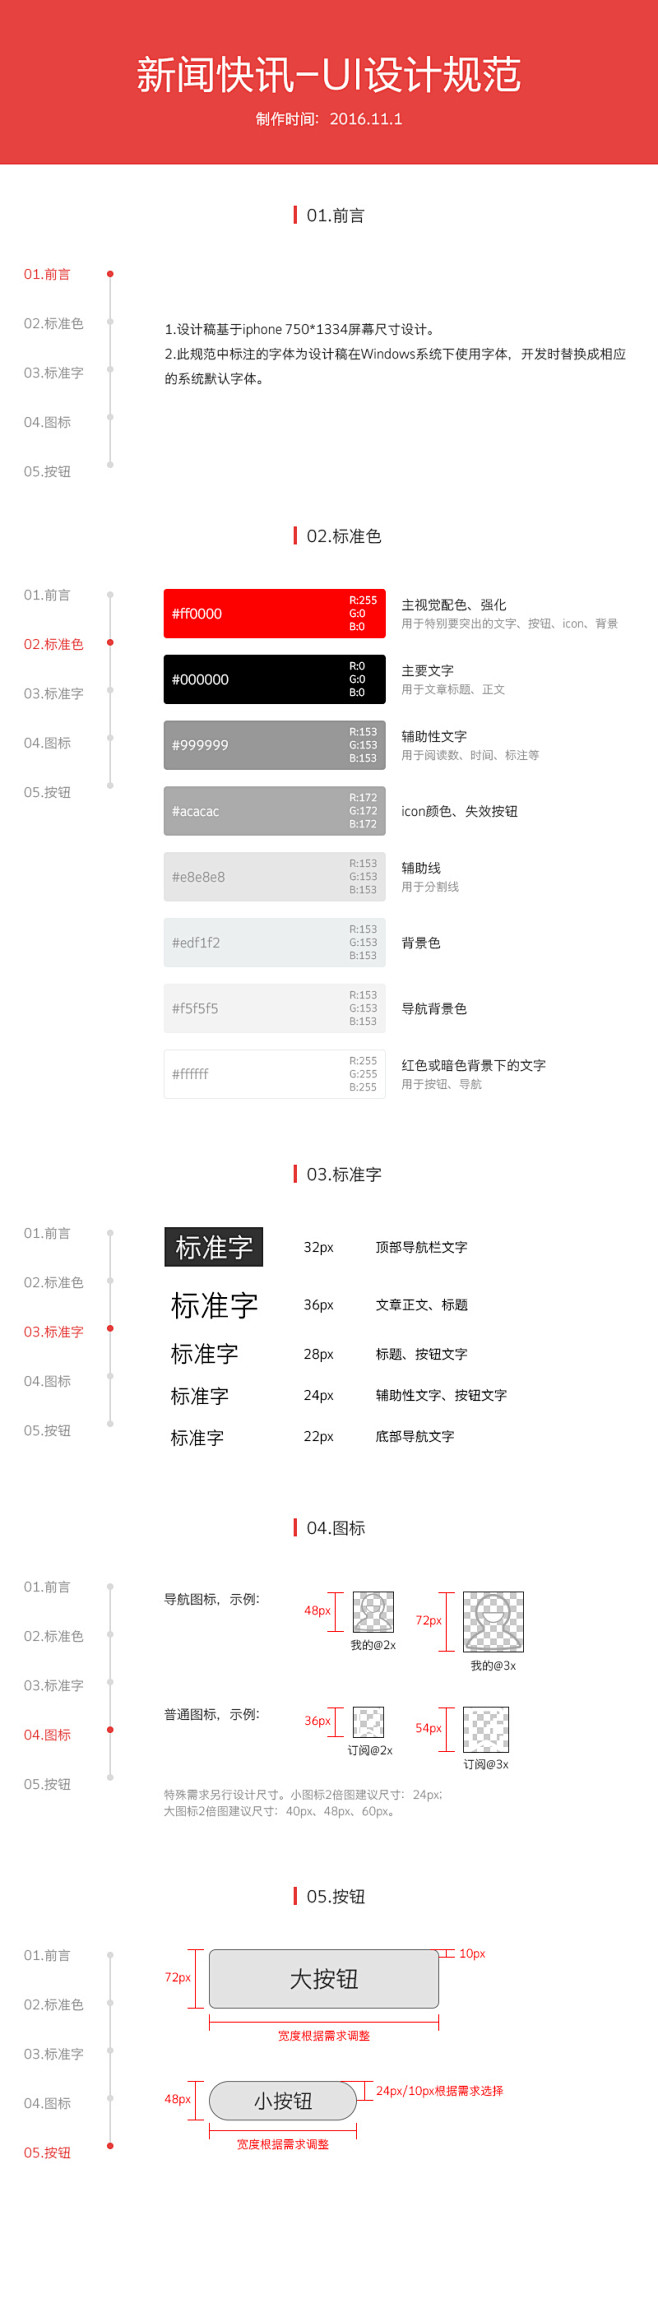 新闻快讯-UI设计规范